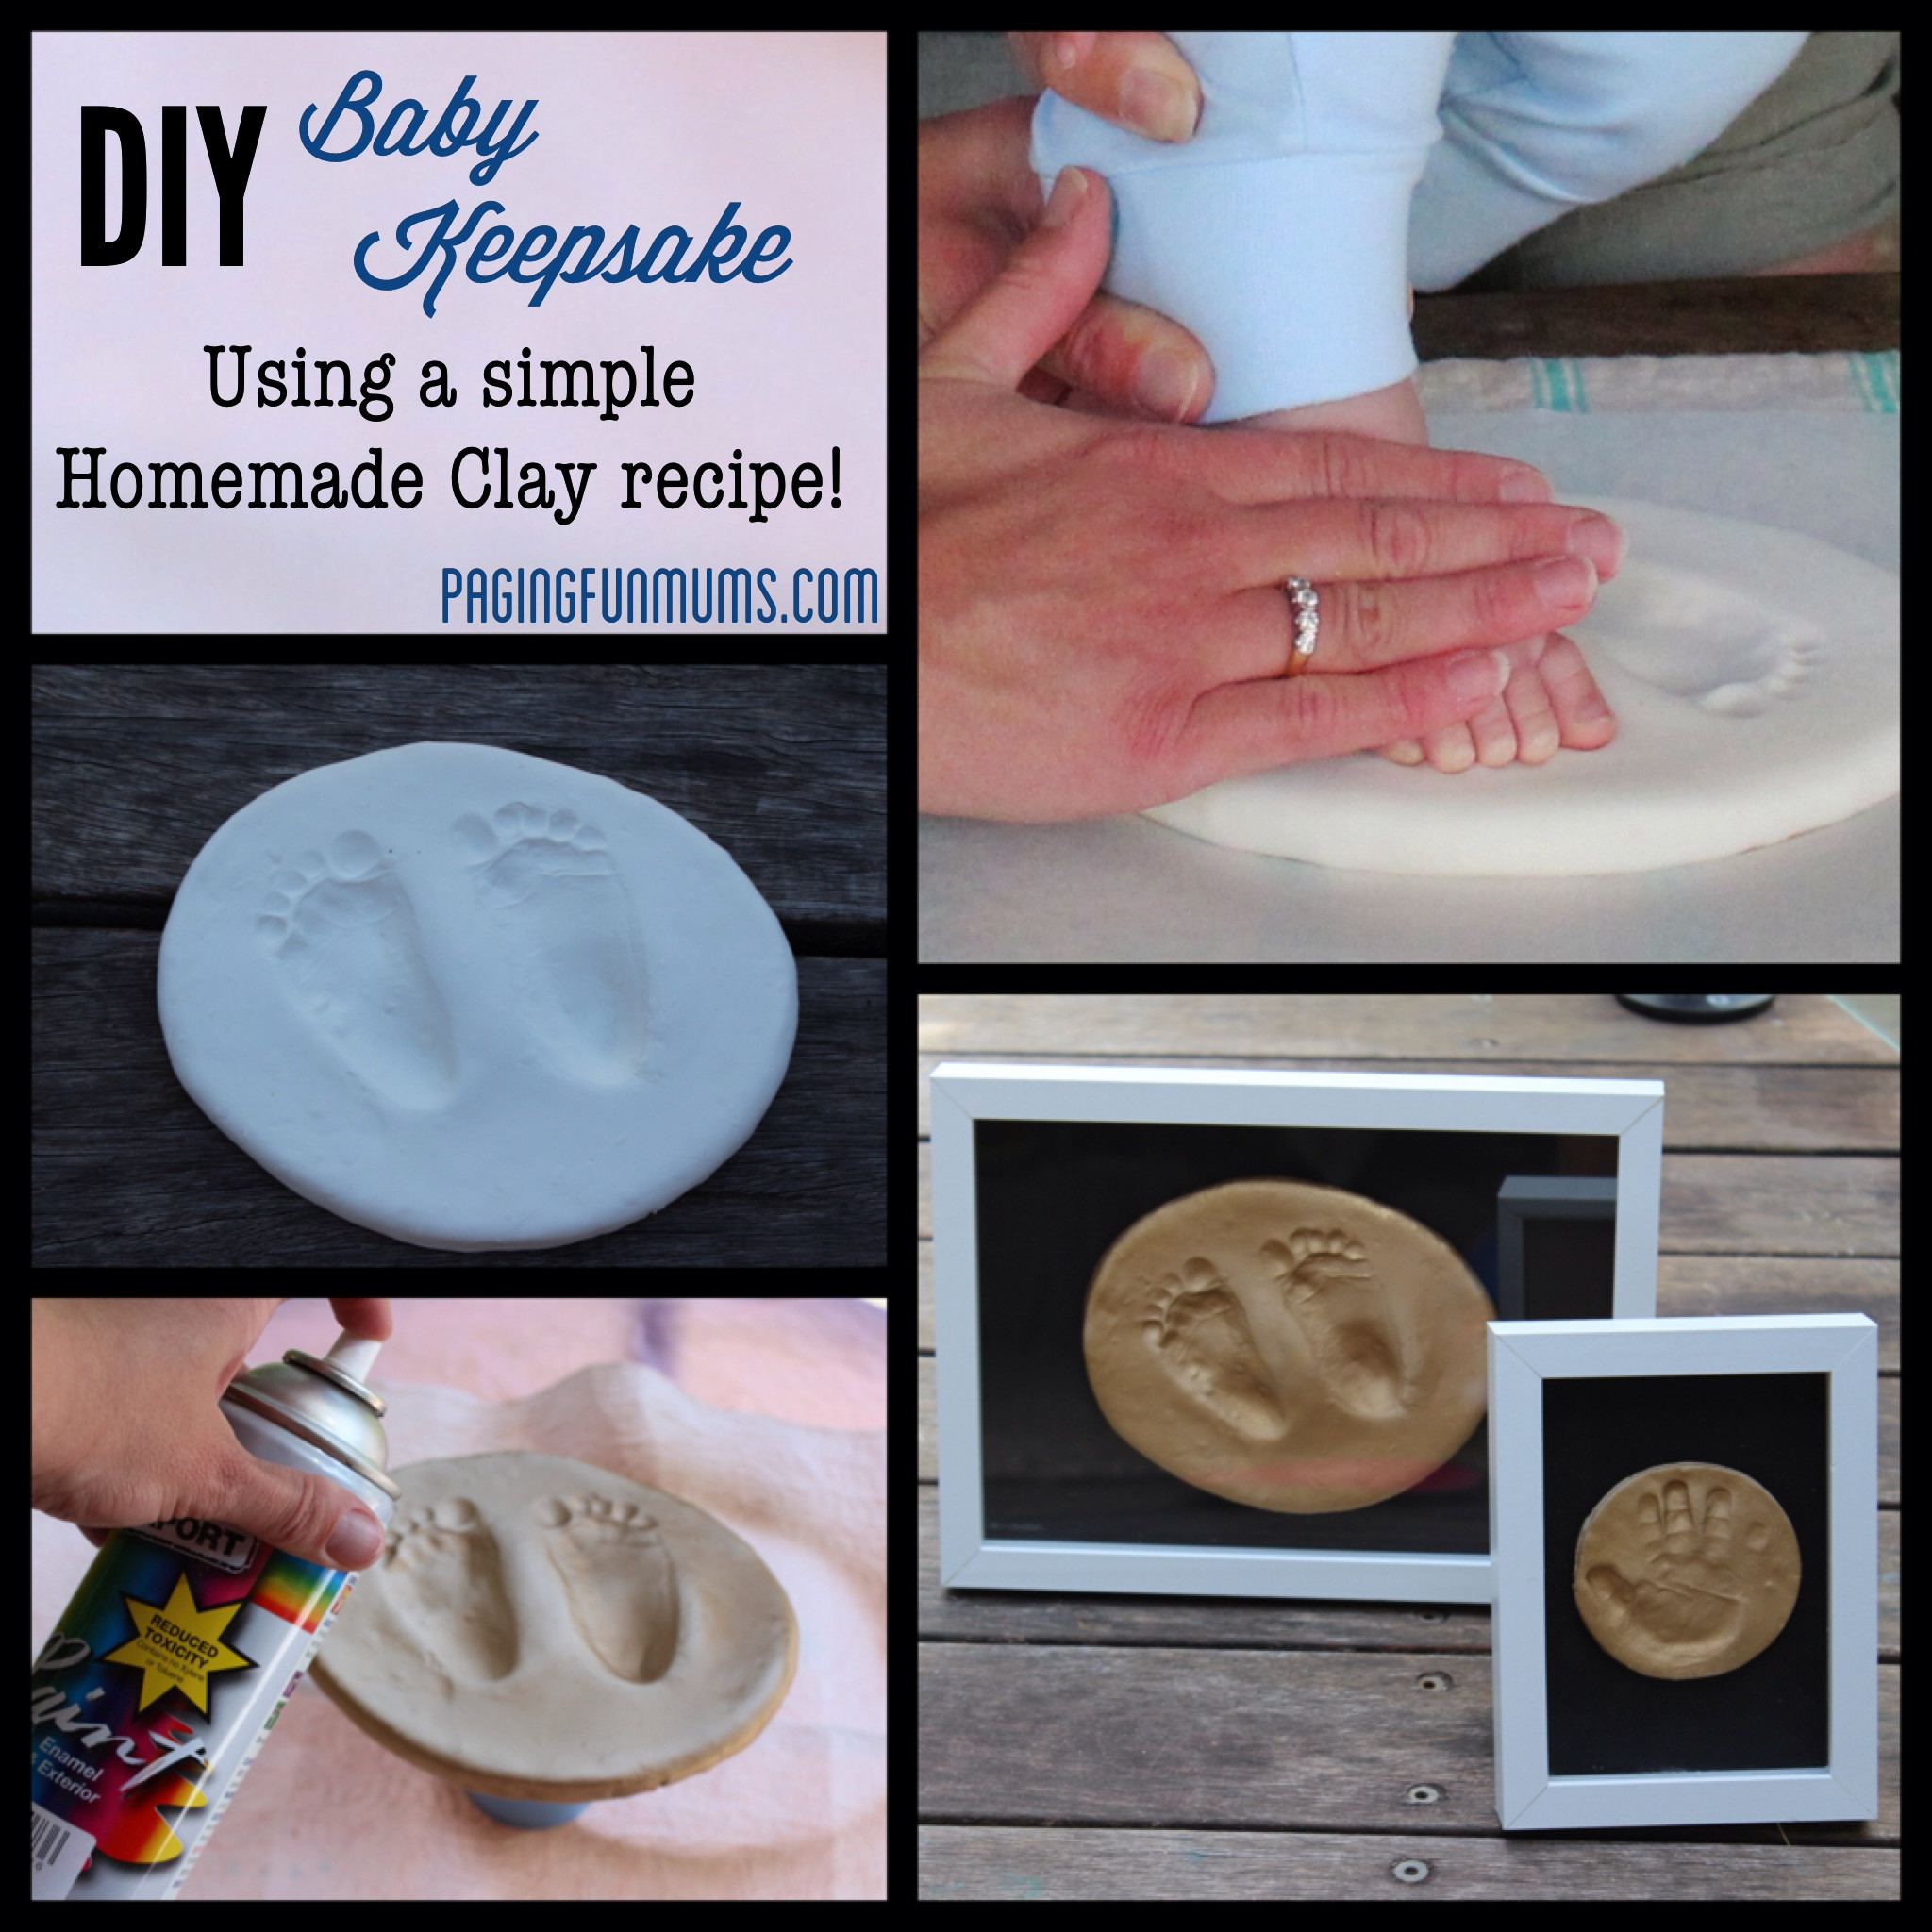 DIY Baby Handprint
 DIY Baby Keepsake using Homemade Clay Paging Fun Mums